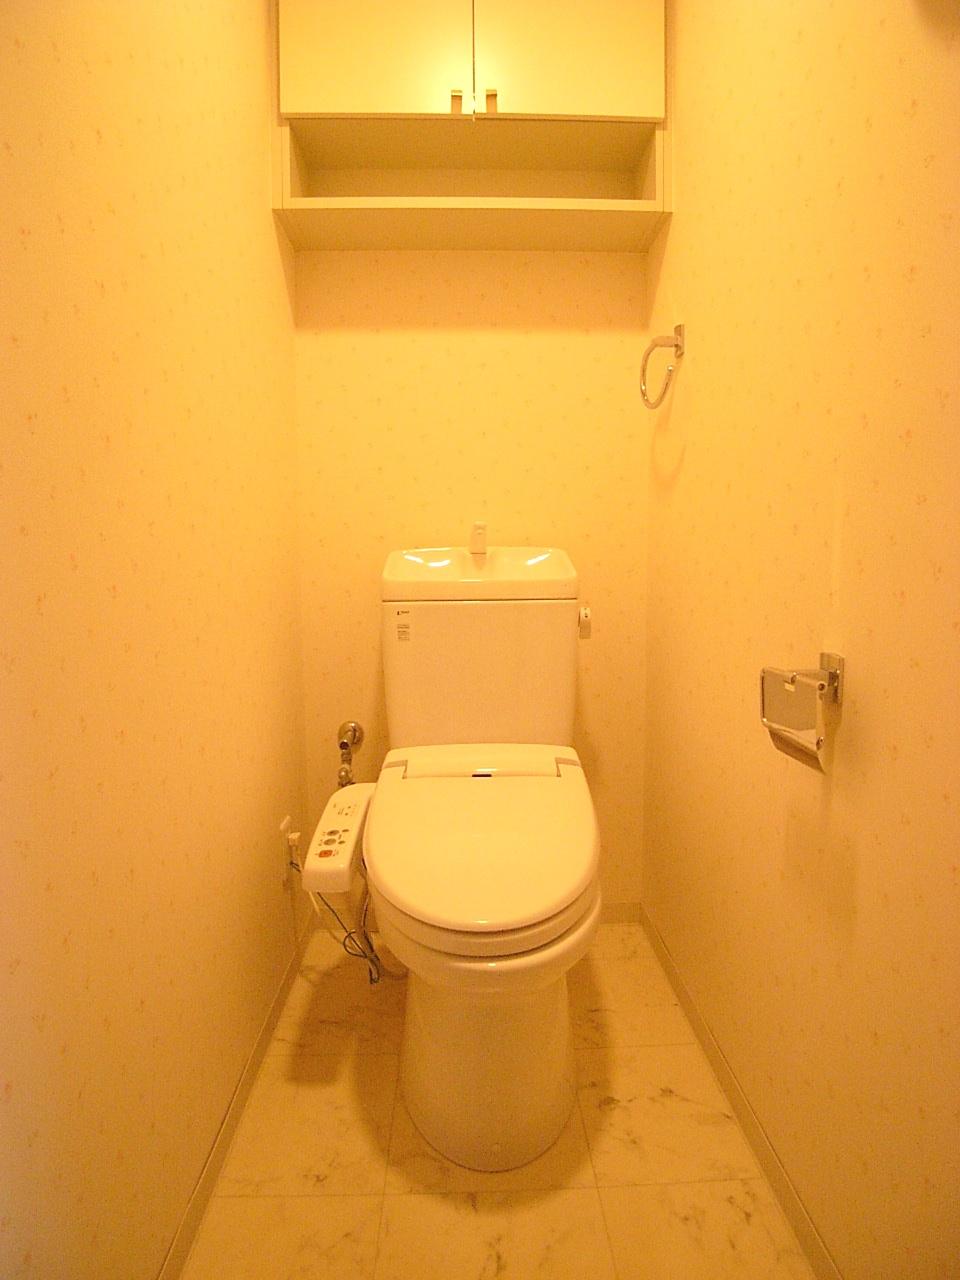 Toilet. Shower toilet (November 2013) Shooting